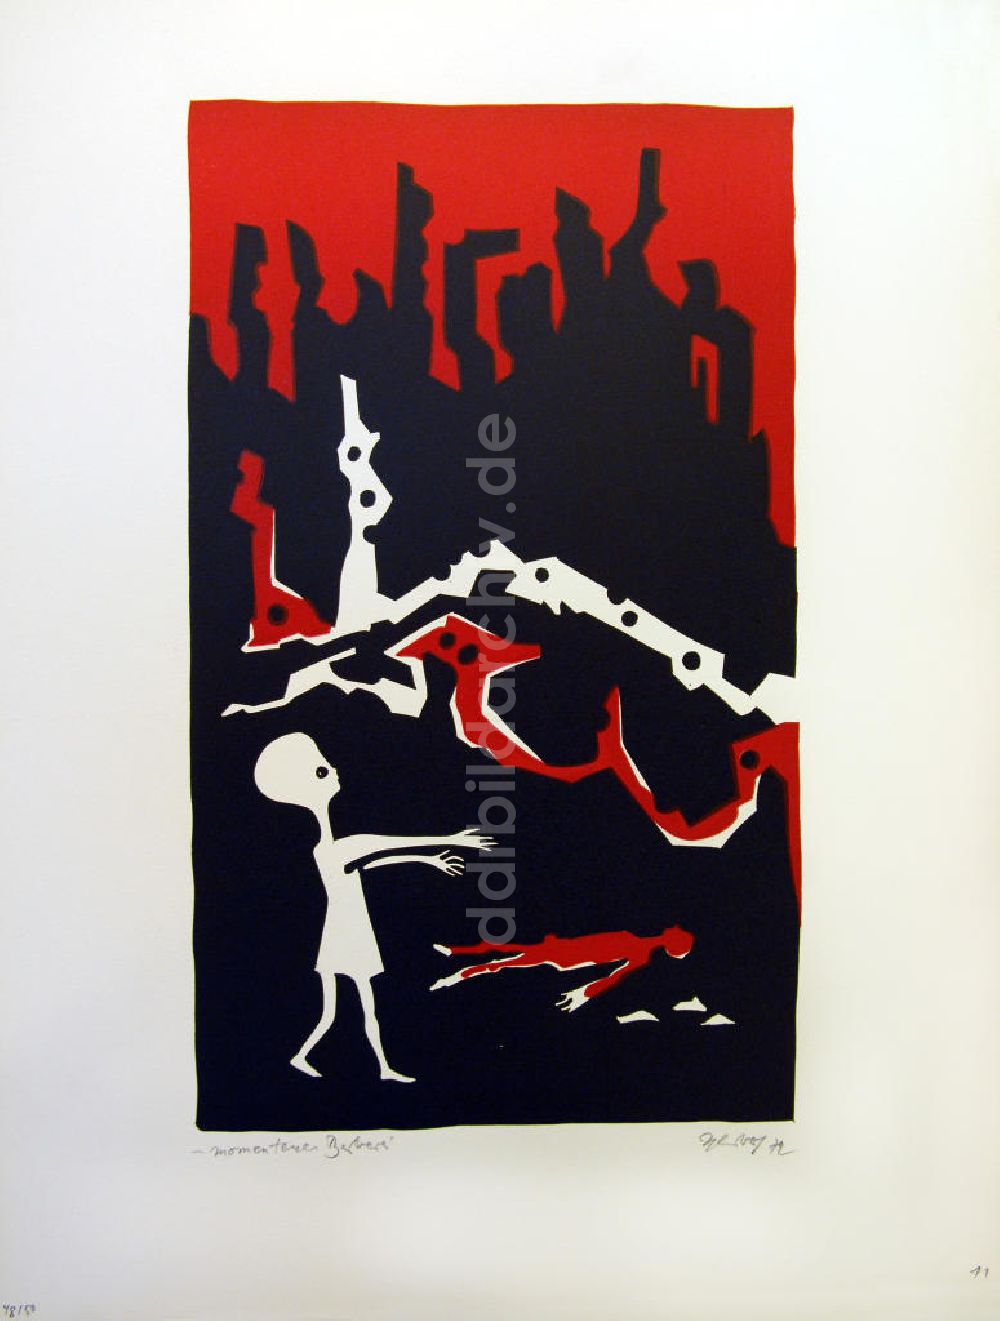 Berlin: Grafik von Herbert Sandberg Motiv 12 aus dem Zyklus Bilder zum Kommunistischen Manifest aus dem Jahr 1972